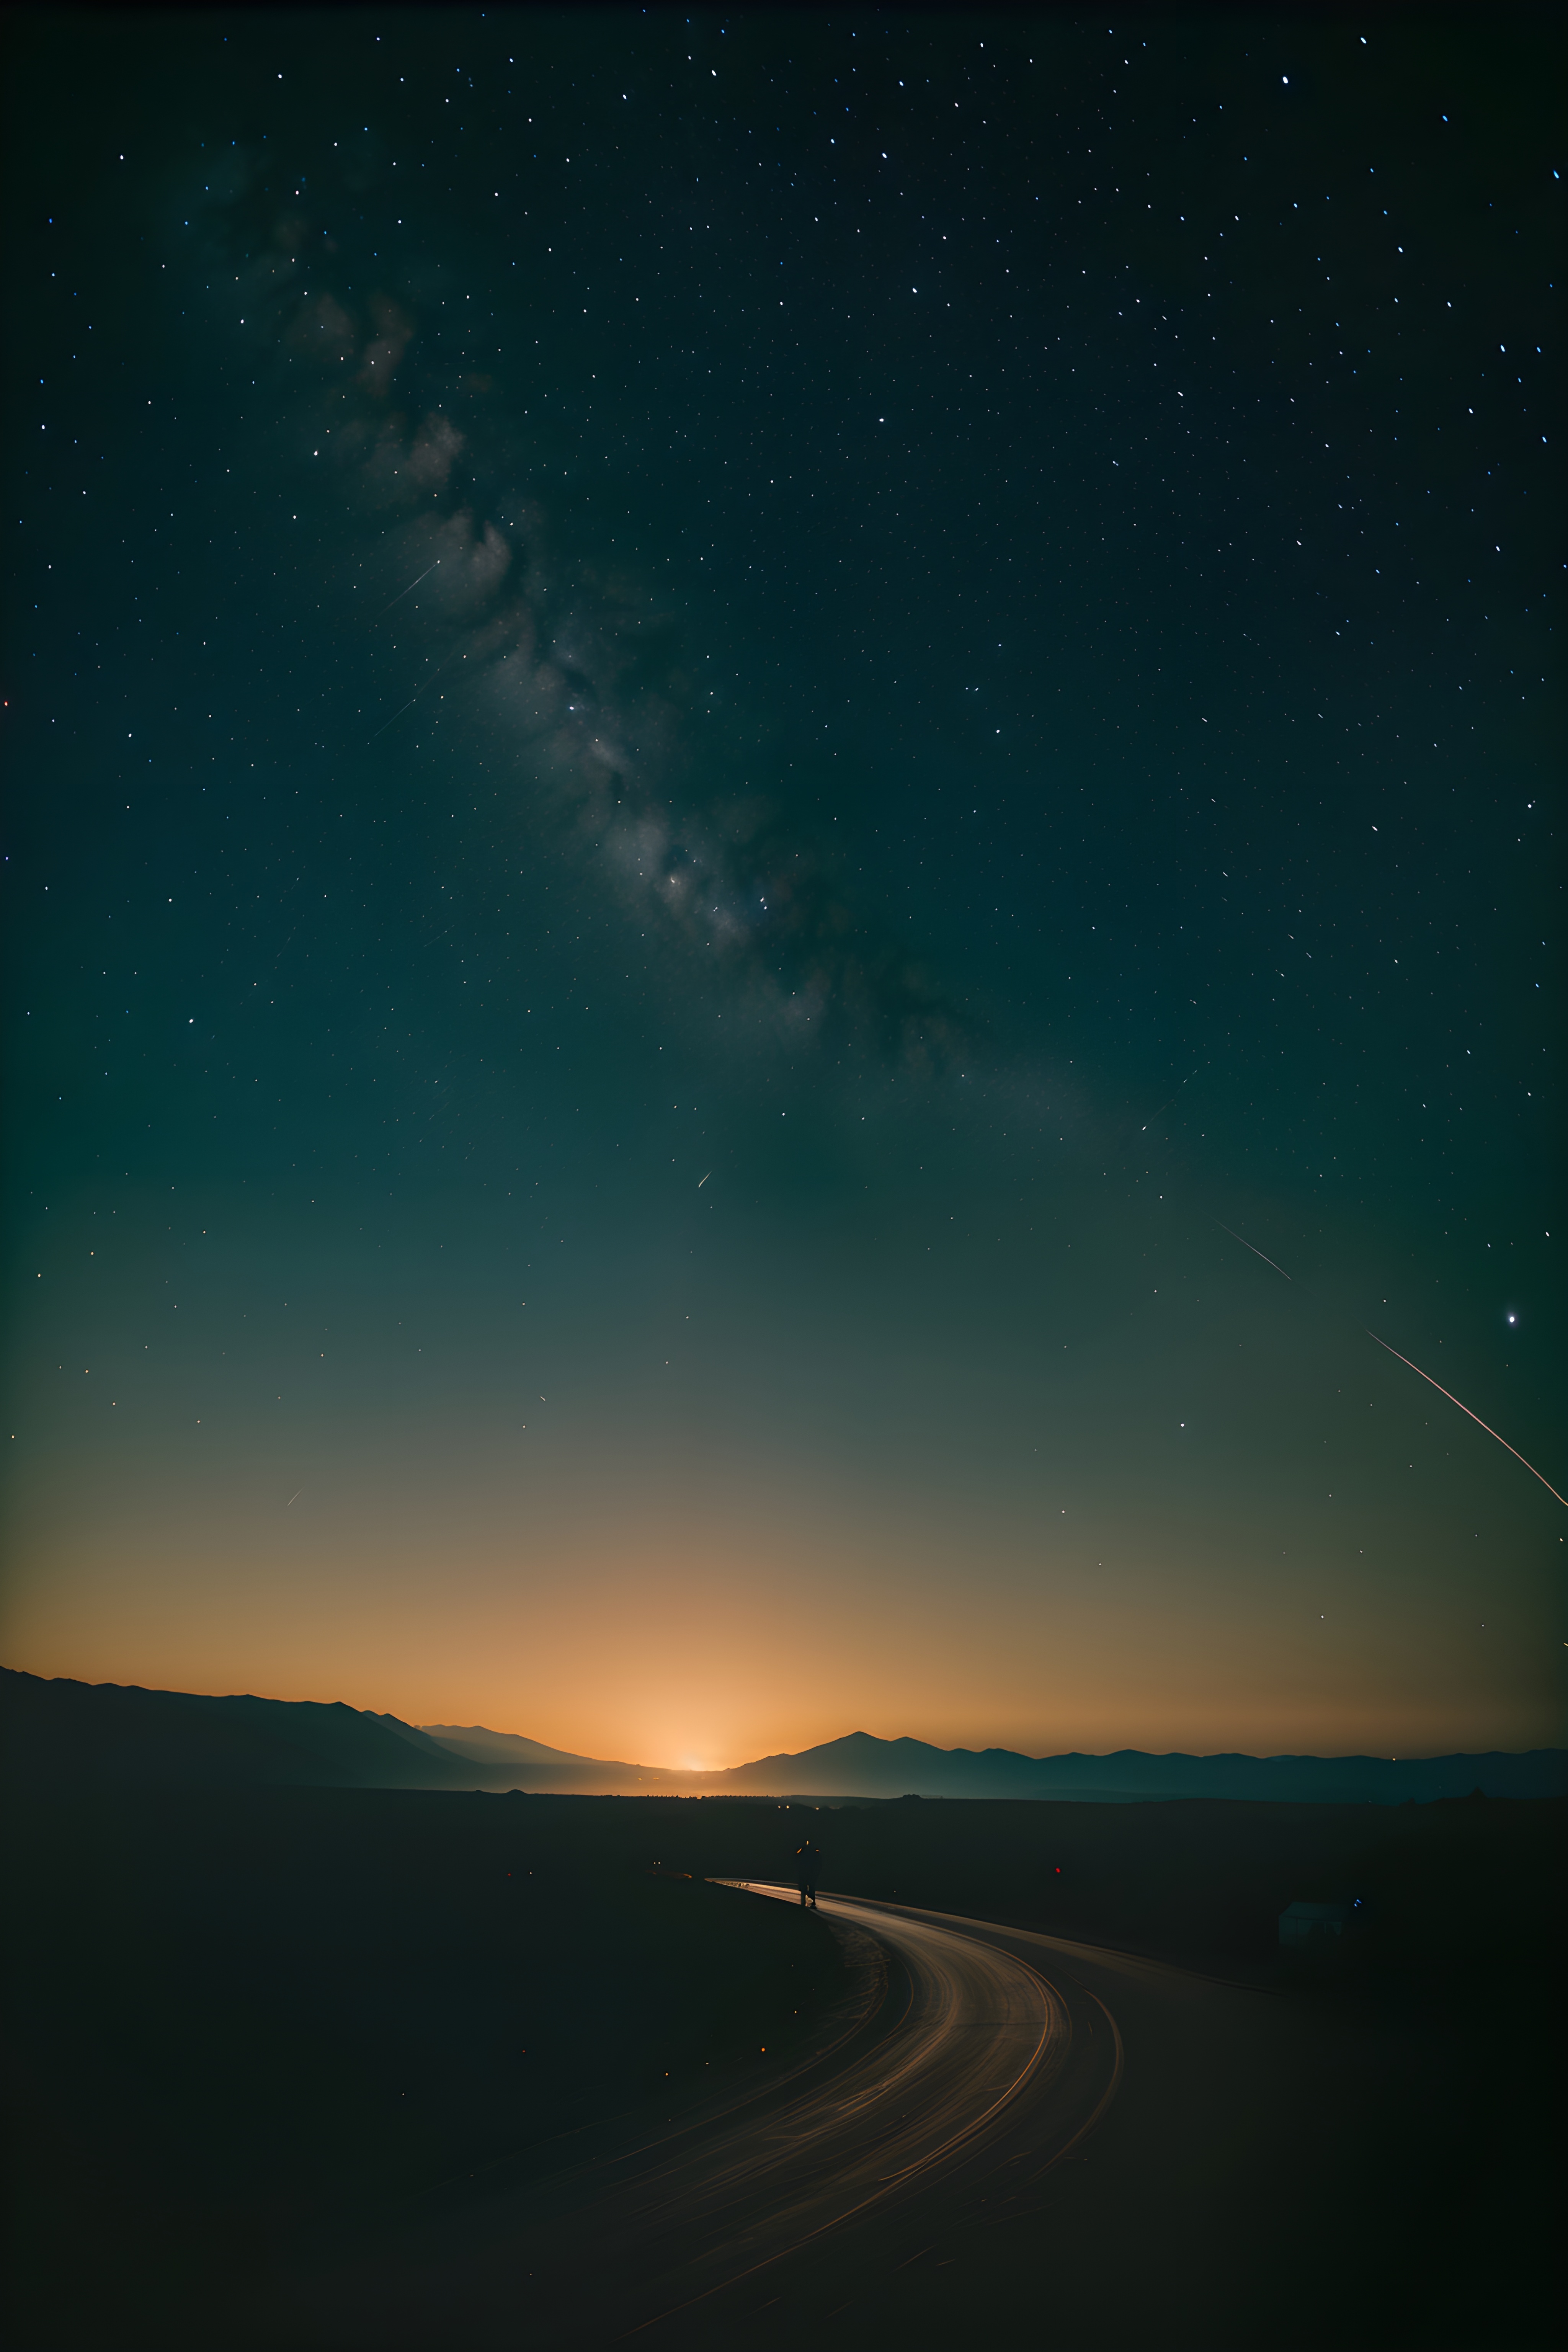 Бесплатное фото Ночное небо со звездами и лучами солнца